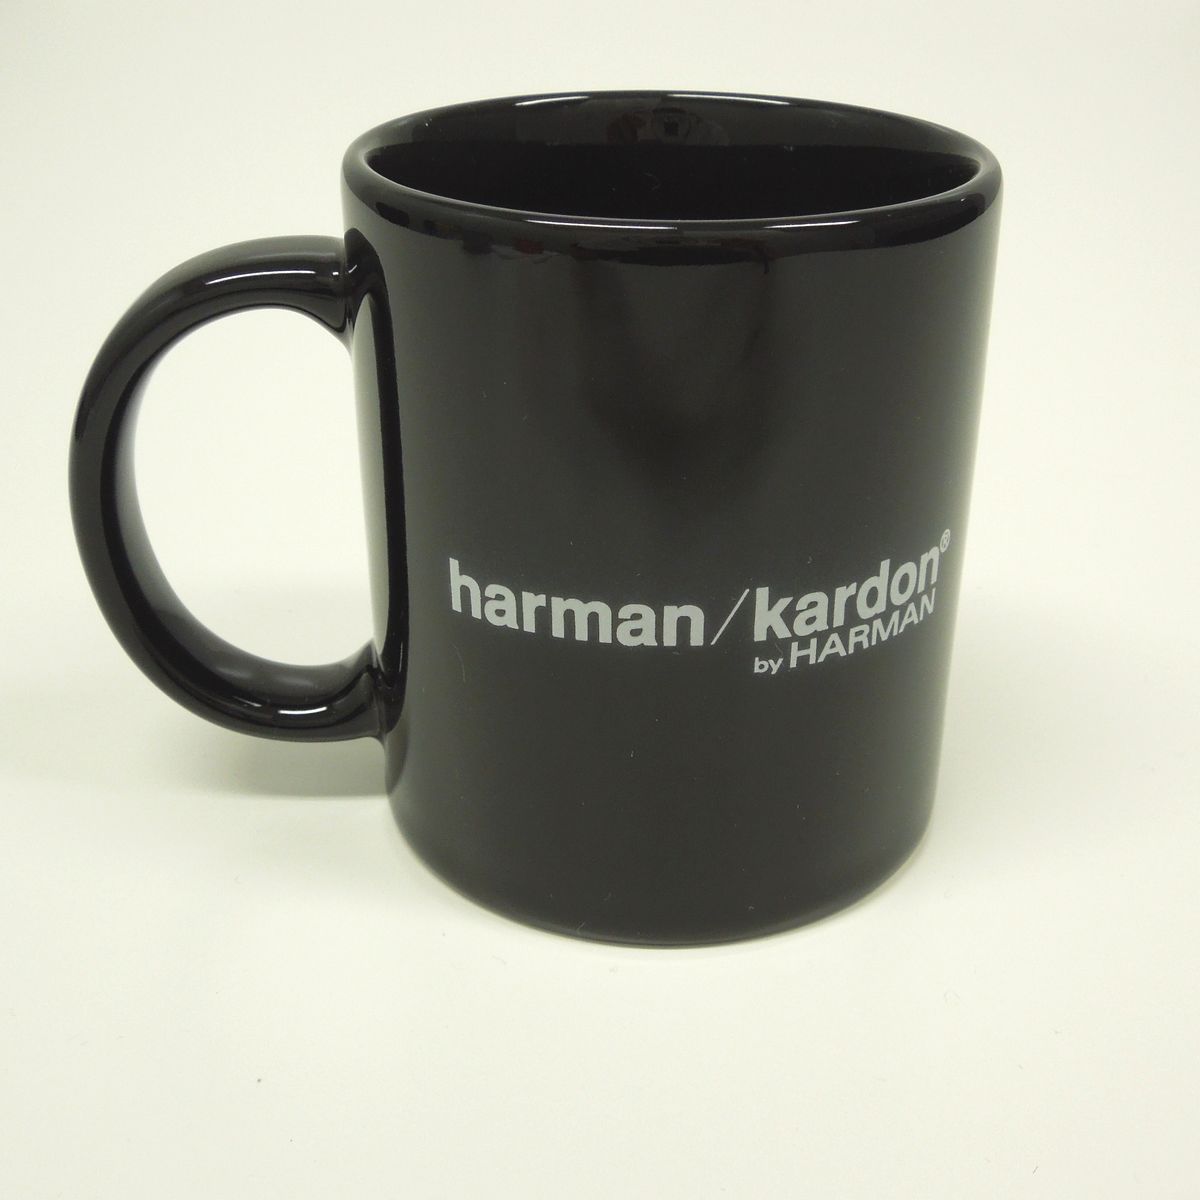 Harman/Kardon / harman/kardon マグカップ